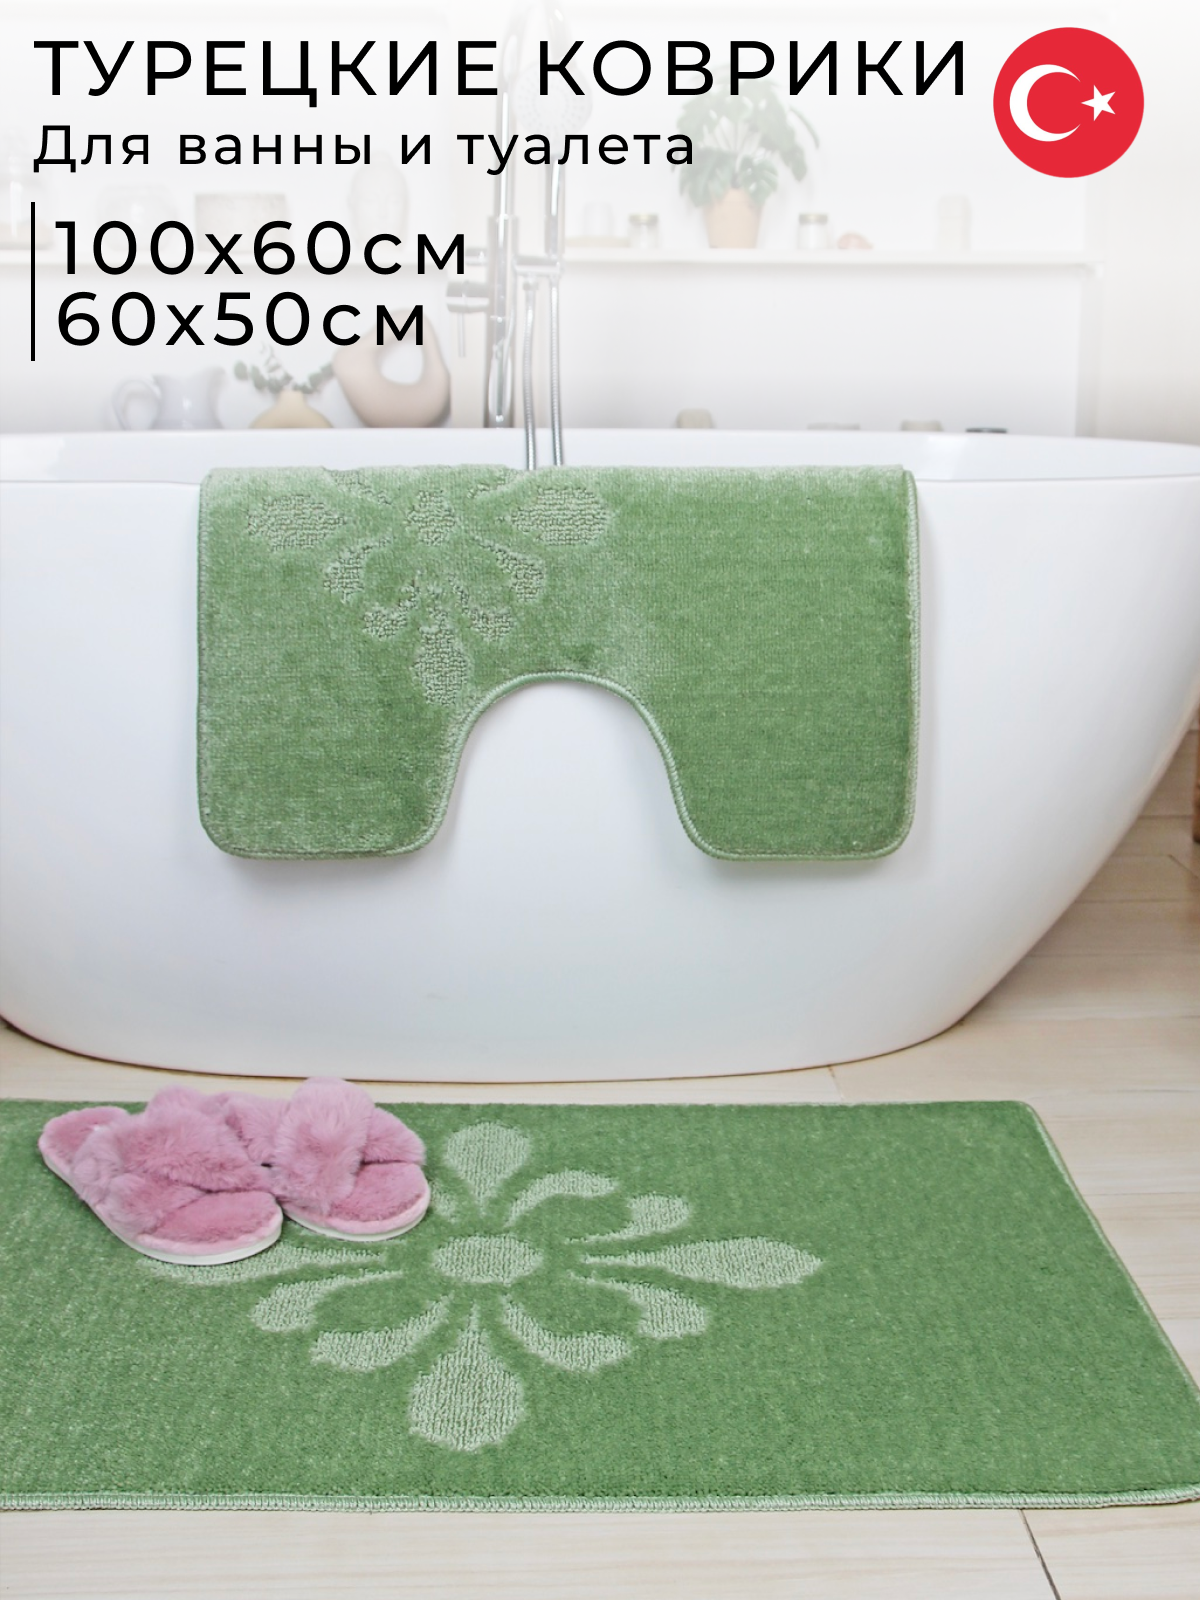 Противоскользящие коврики для ванной и туалета Vonaldi 100х60 см и 60х50 см, оливковый